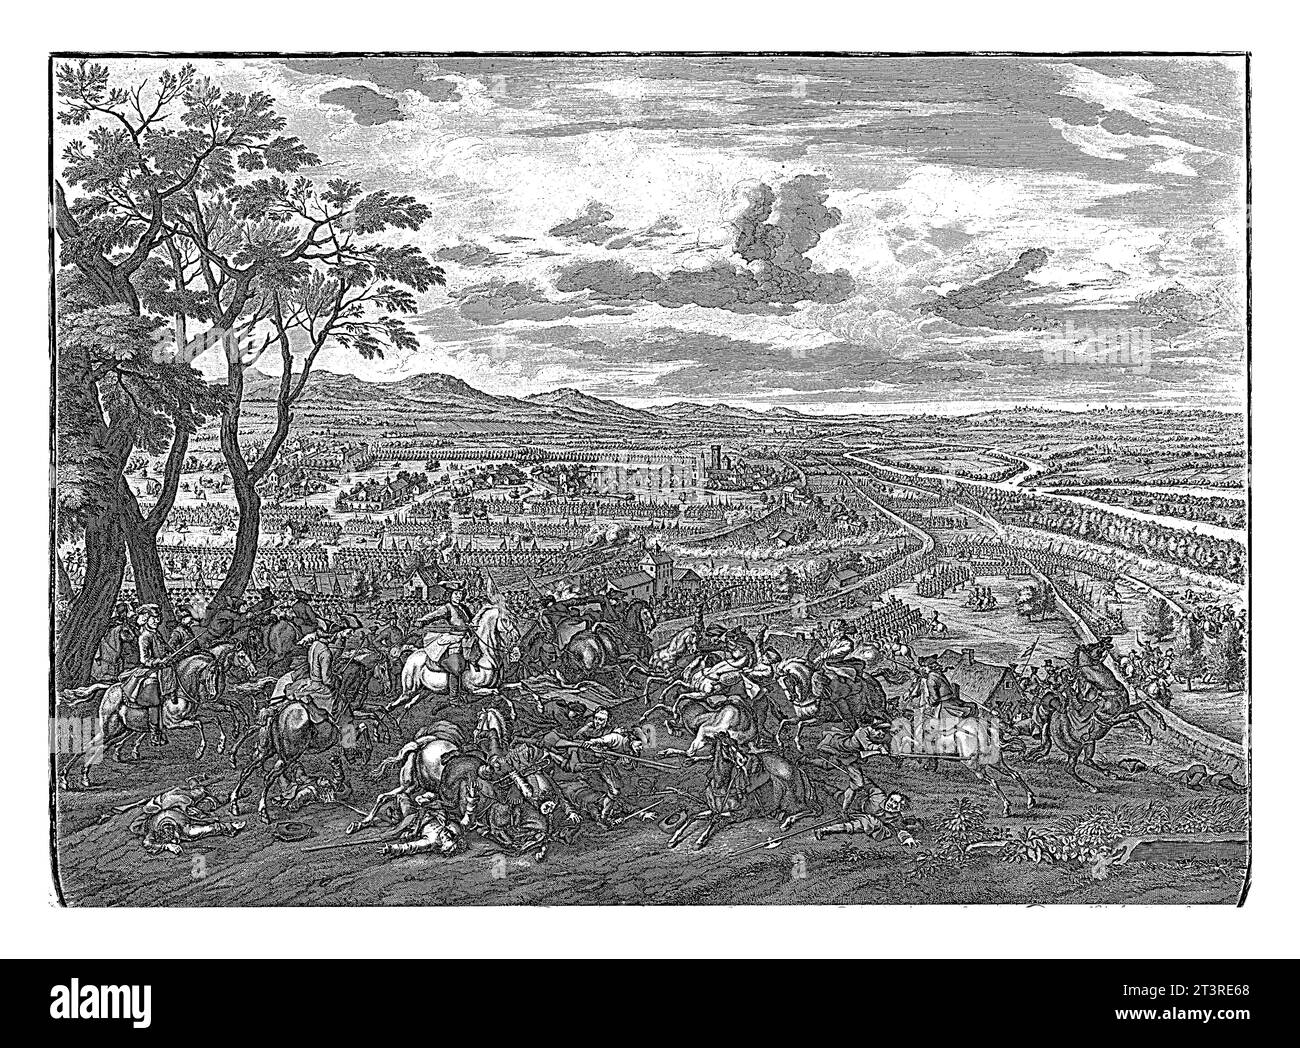 Bataille de Luzzara, 1702, Jan van Huchtenburg, 1729 bataille de Luzzara avec une victoire des alliés sous le prince Eugène de Savoie contre les Français Banque D'Images